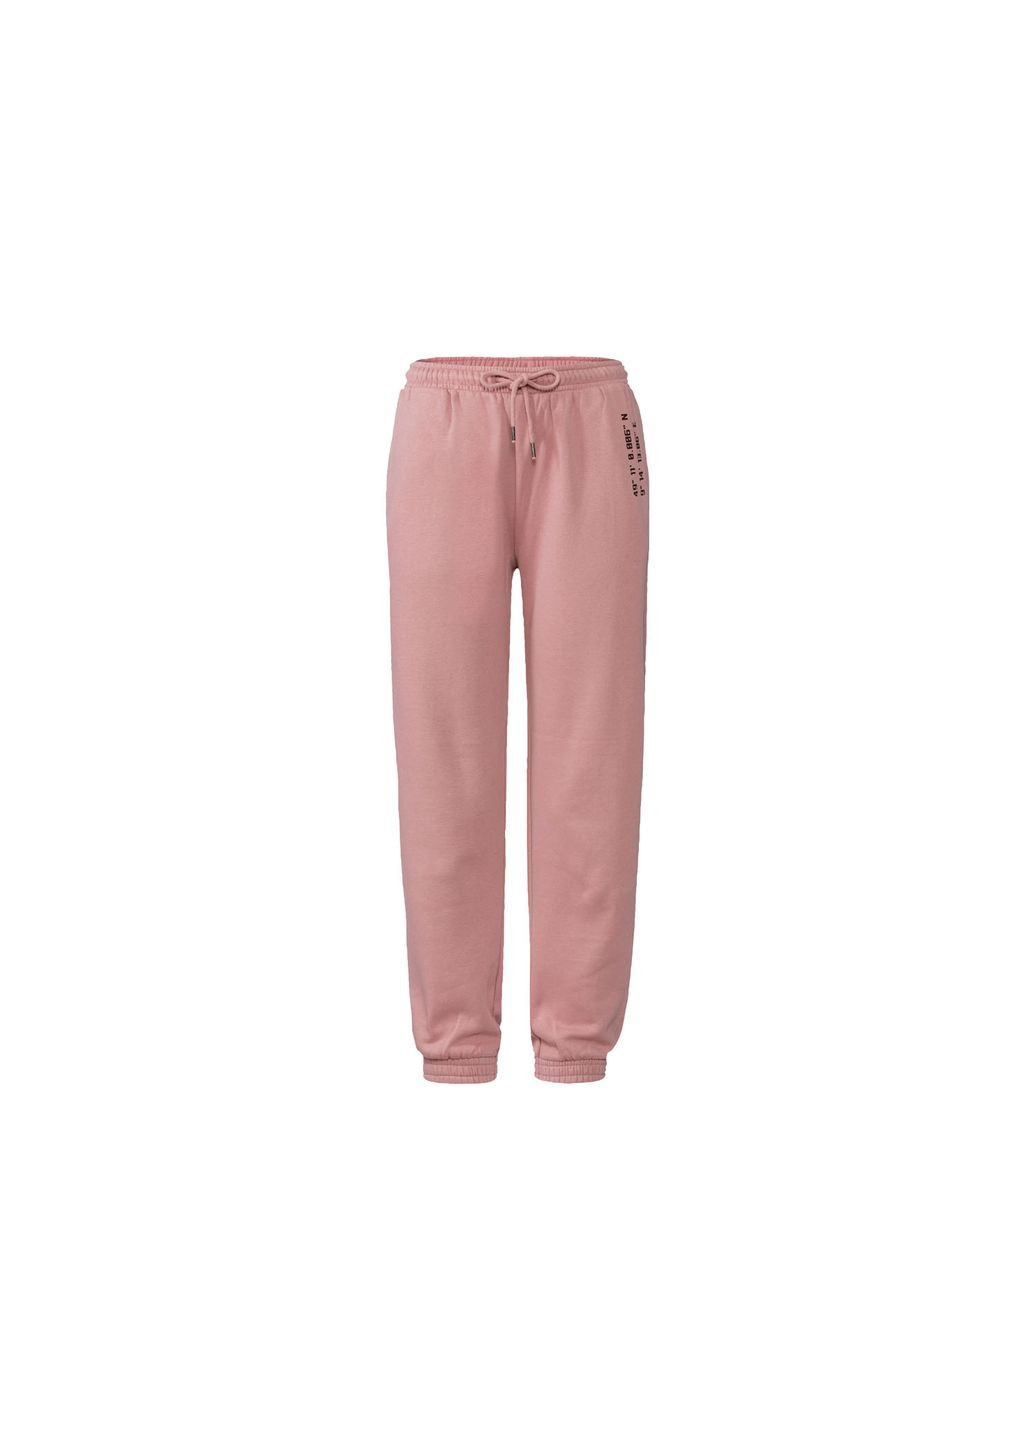 Розовые повседневный, кэжуал, спортивные демисезонные прямые брюки Esmara